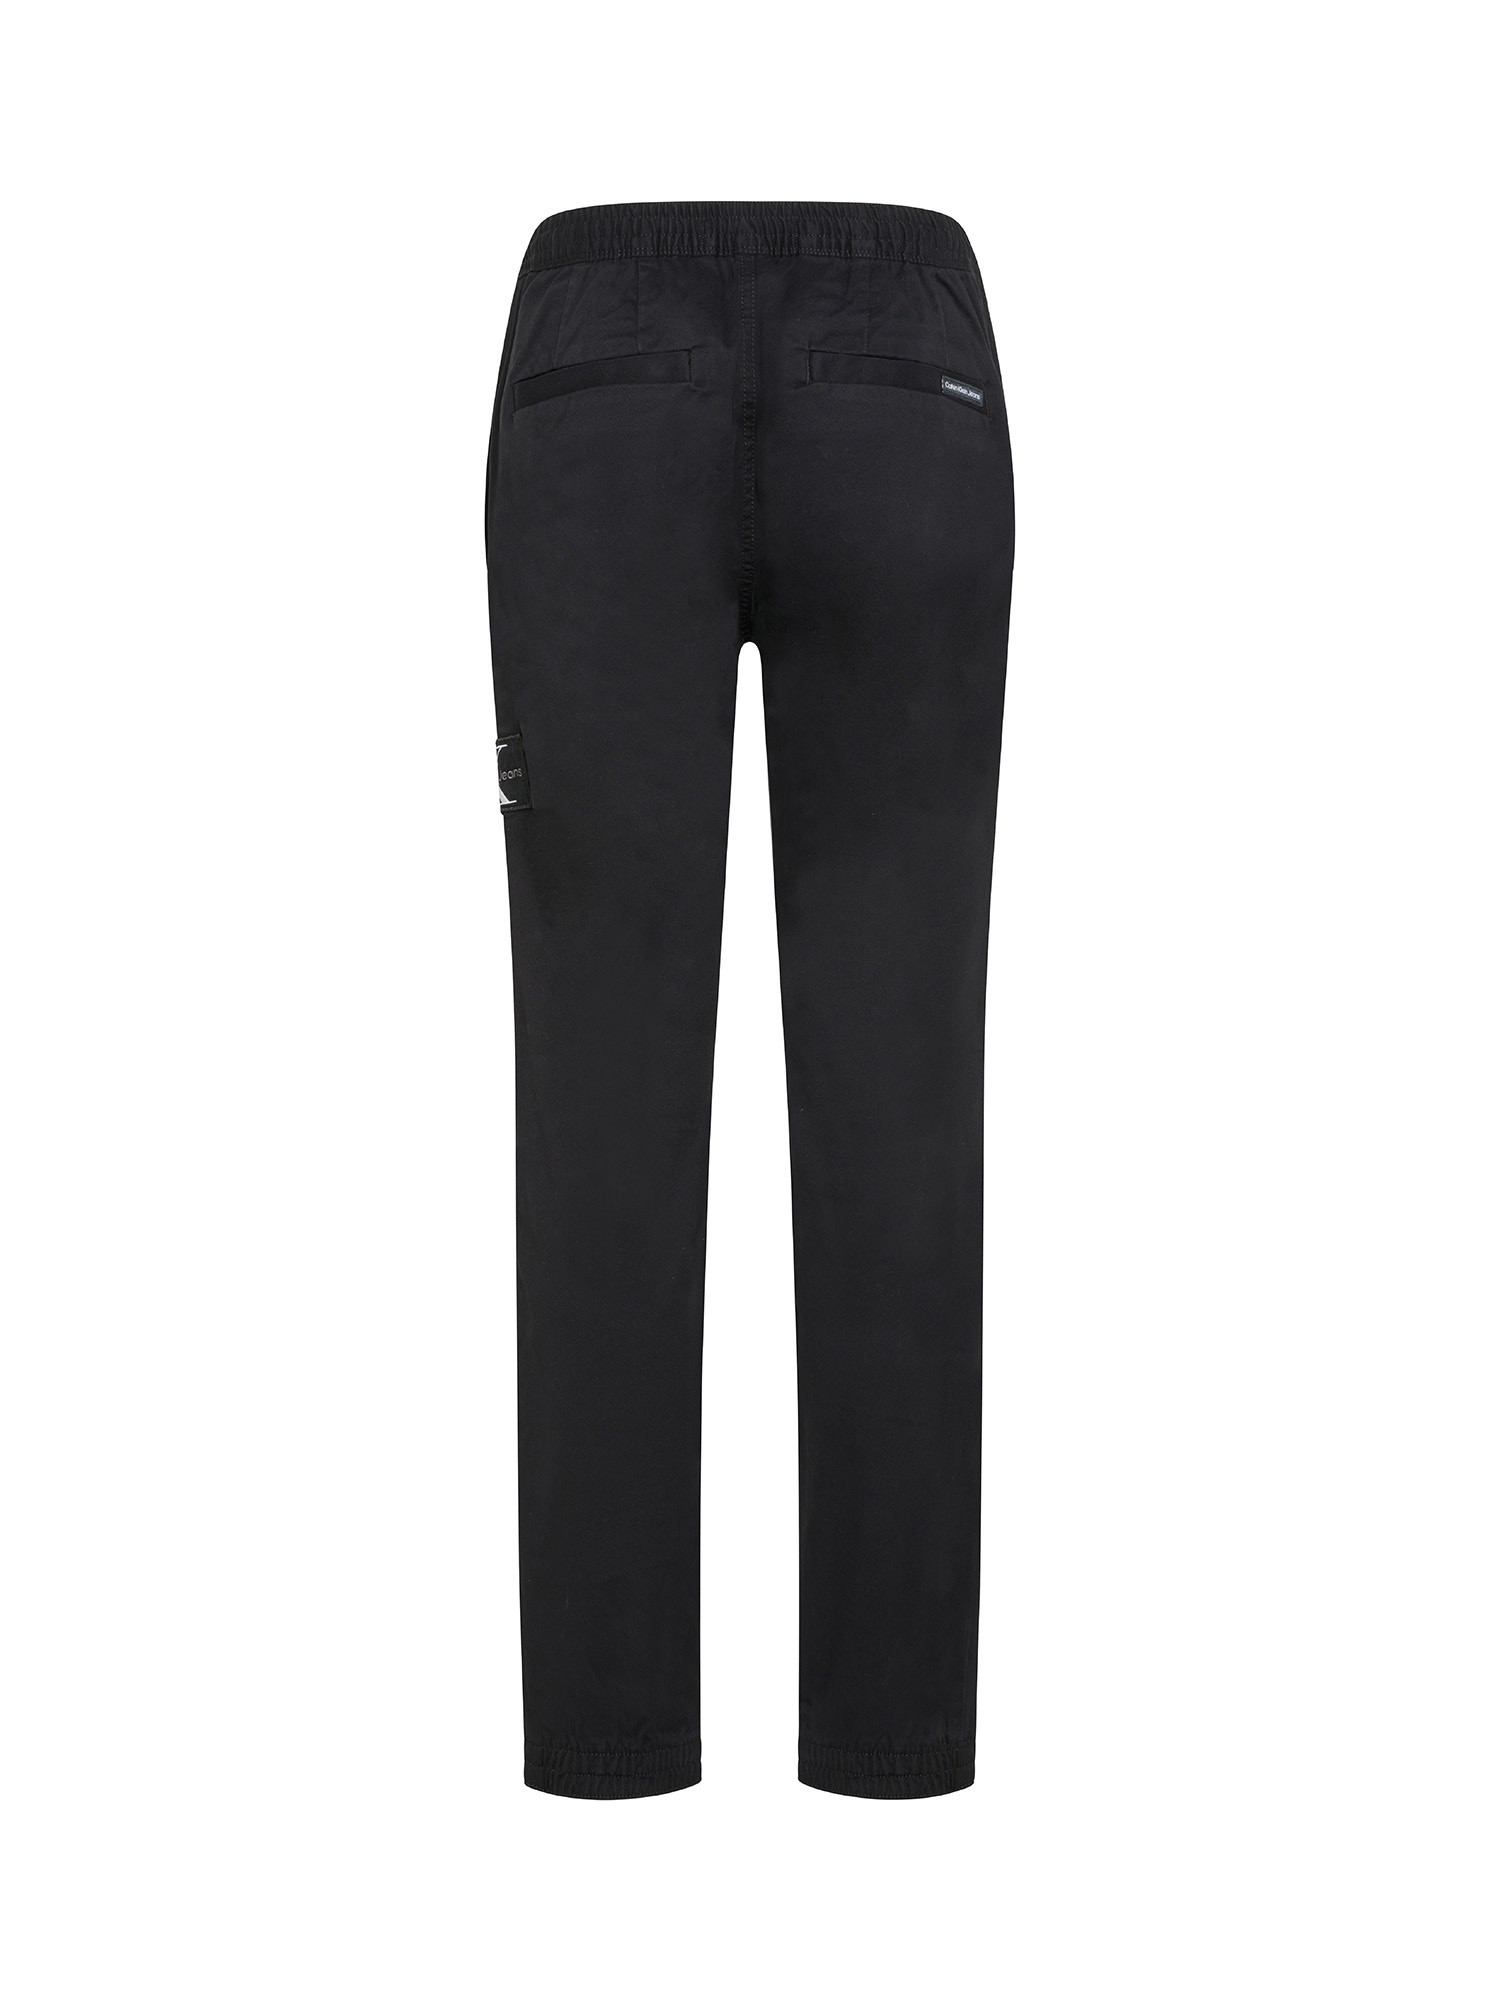 Calvin Klein Jeans - Pantaloni chino, Nero, large image number 1